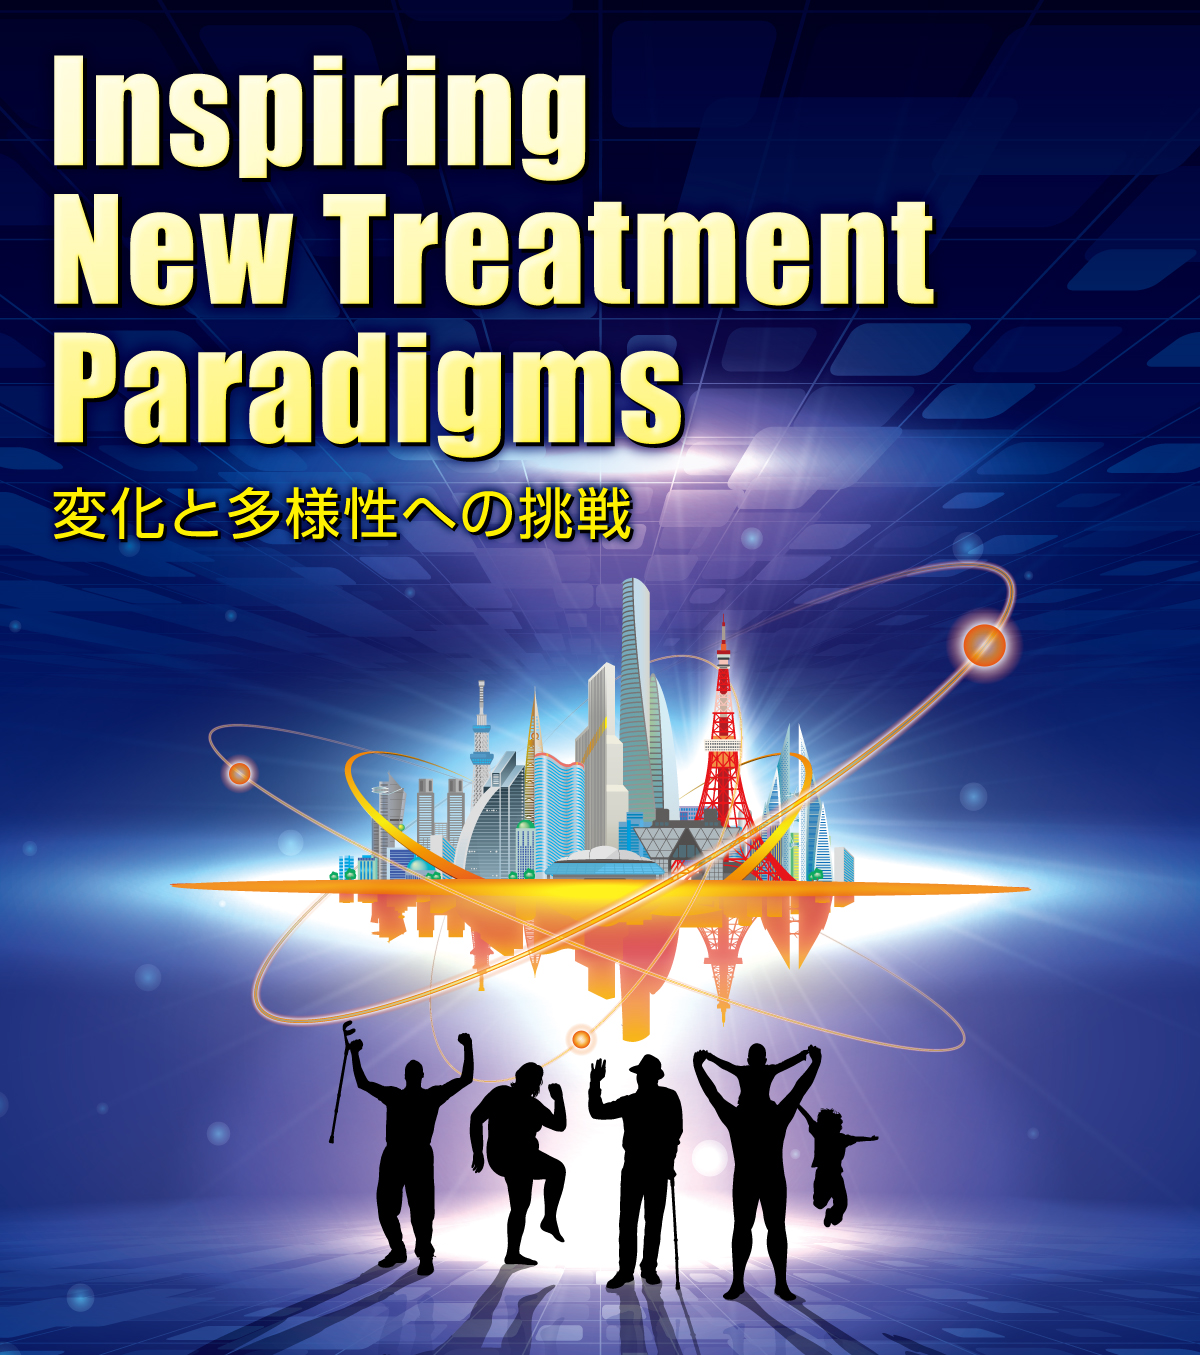 第29回日本血管内治療学会学術総会「Inspiring New Treatment Paradigms 変化と多様性への挑戦」